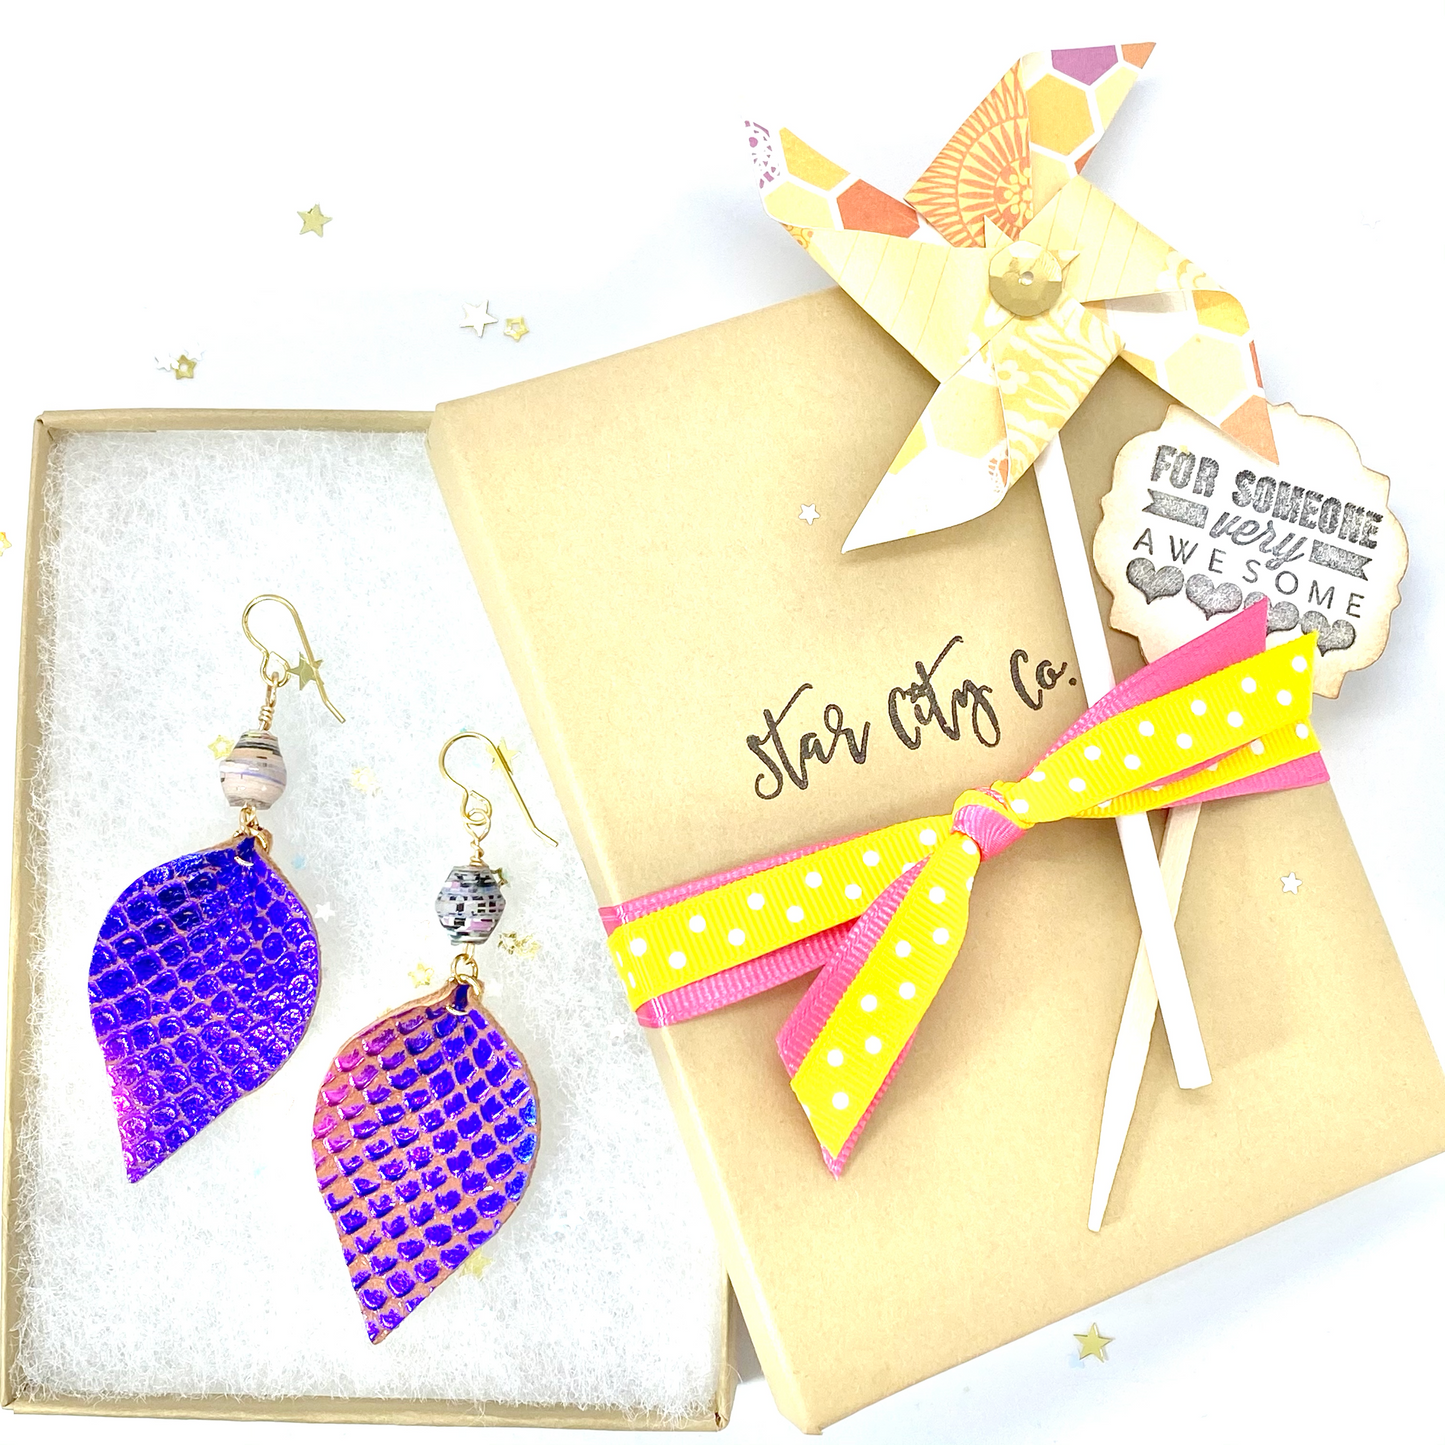 Purple Mermaid Leather Earrings